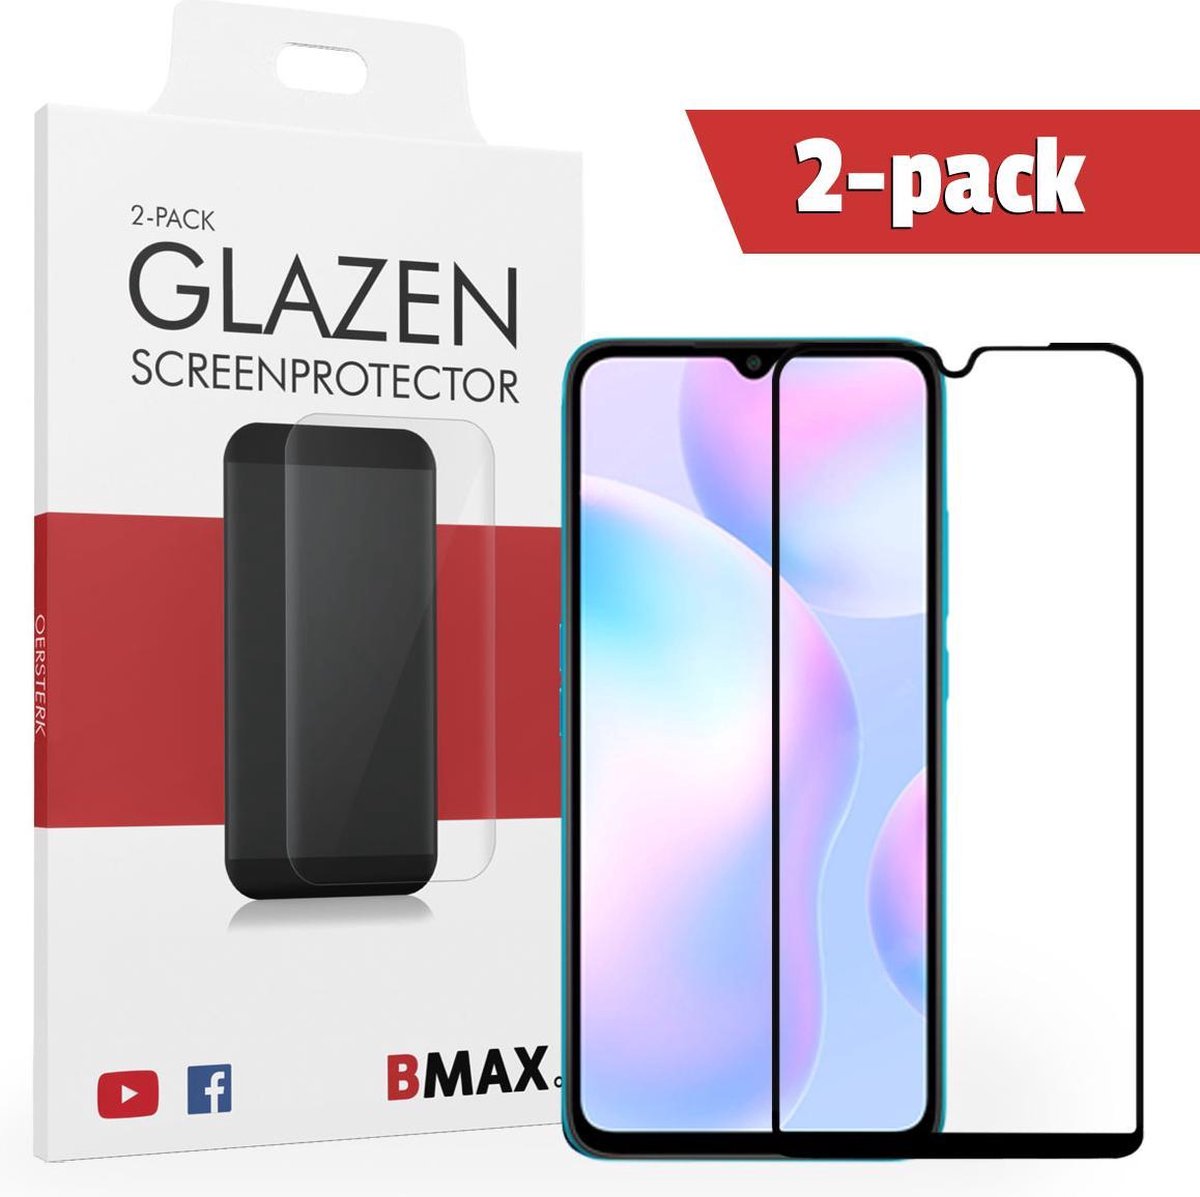 2-pack Bmax Xiaomi Redmi 9a Screenprotector - Glass - Full Cover 2.5d - Black/zwart